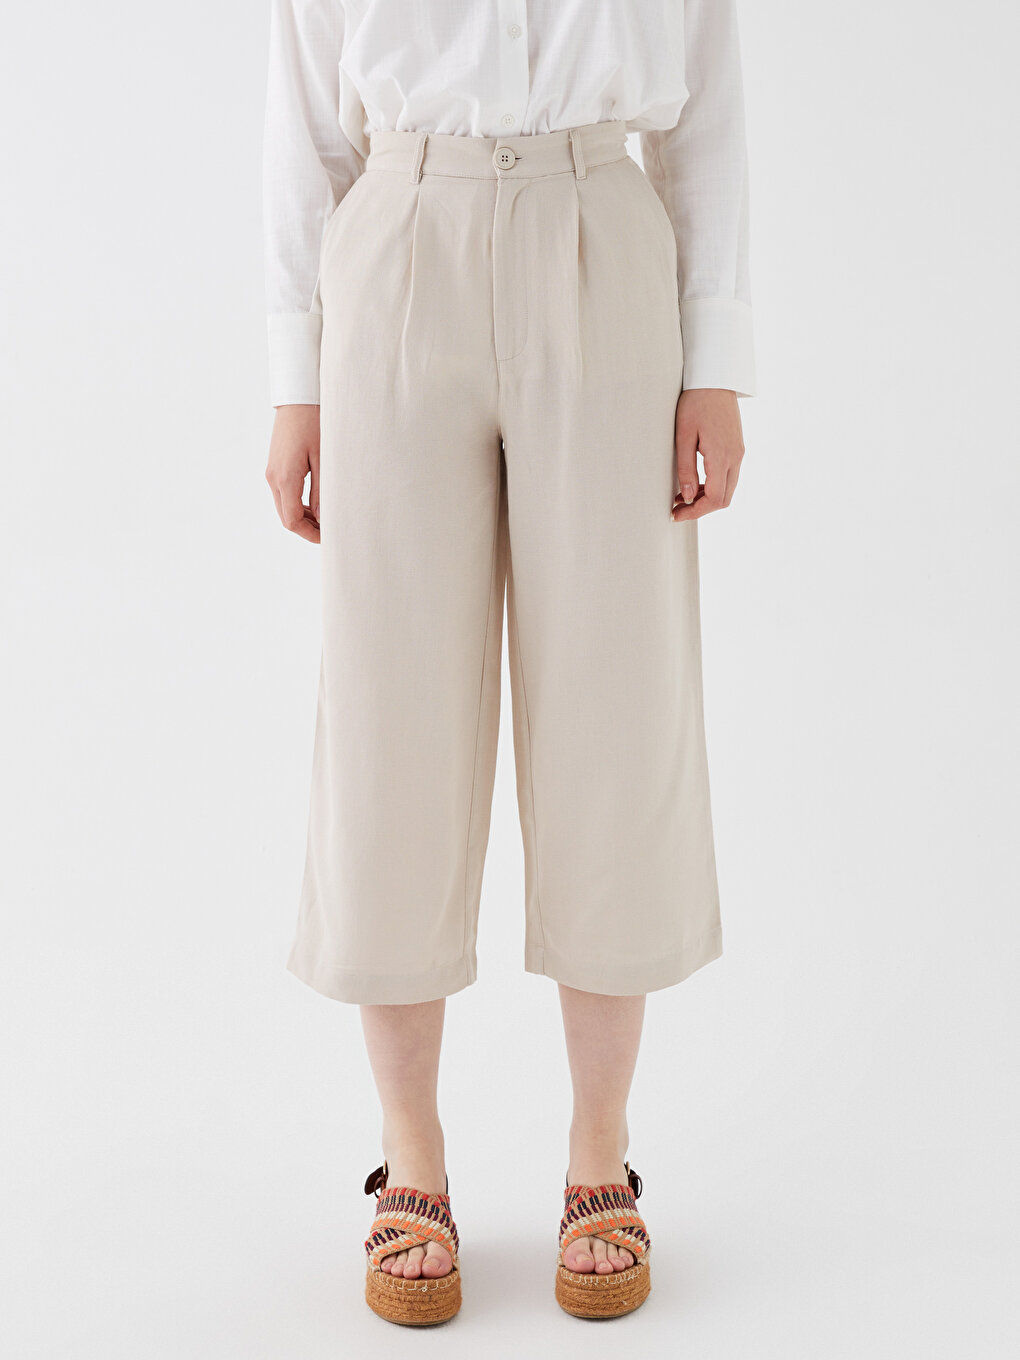 Relaxed Fit Plain Linen Blend Women's Capri Pants -S3H381Z8-FWZ